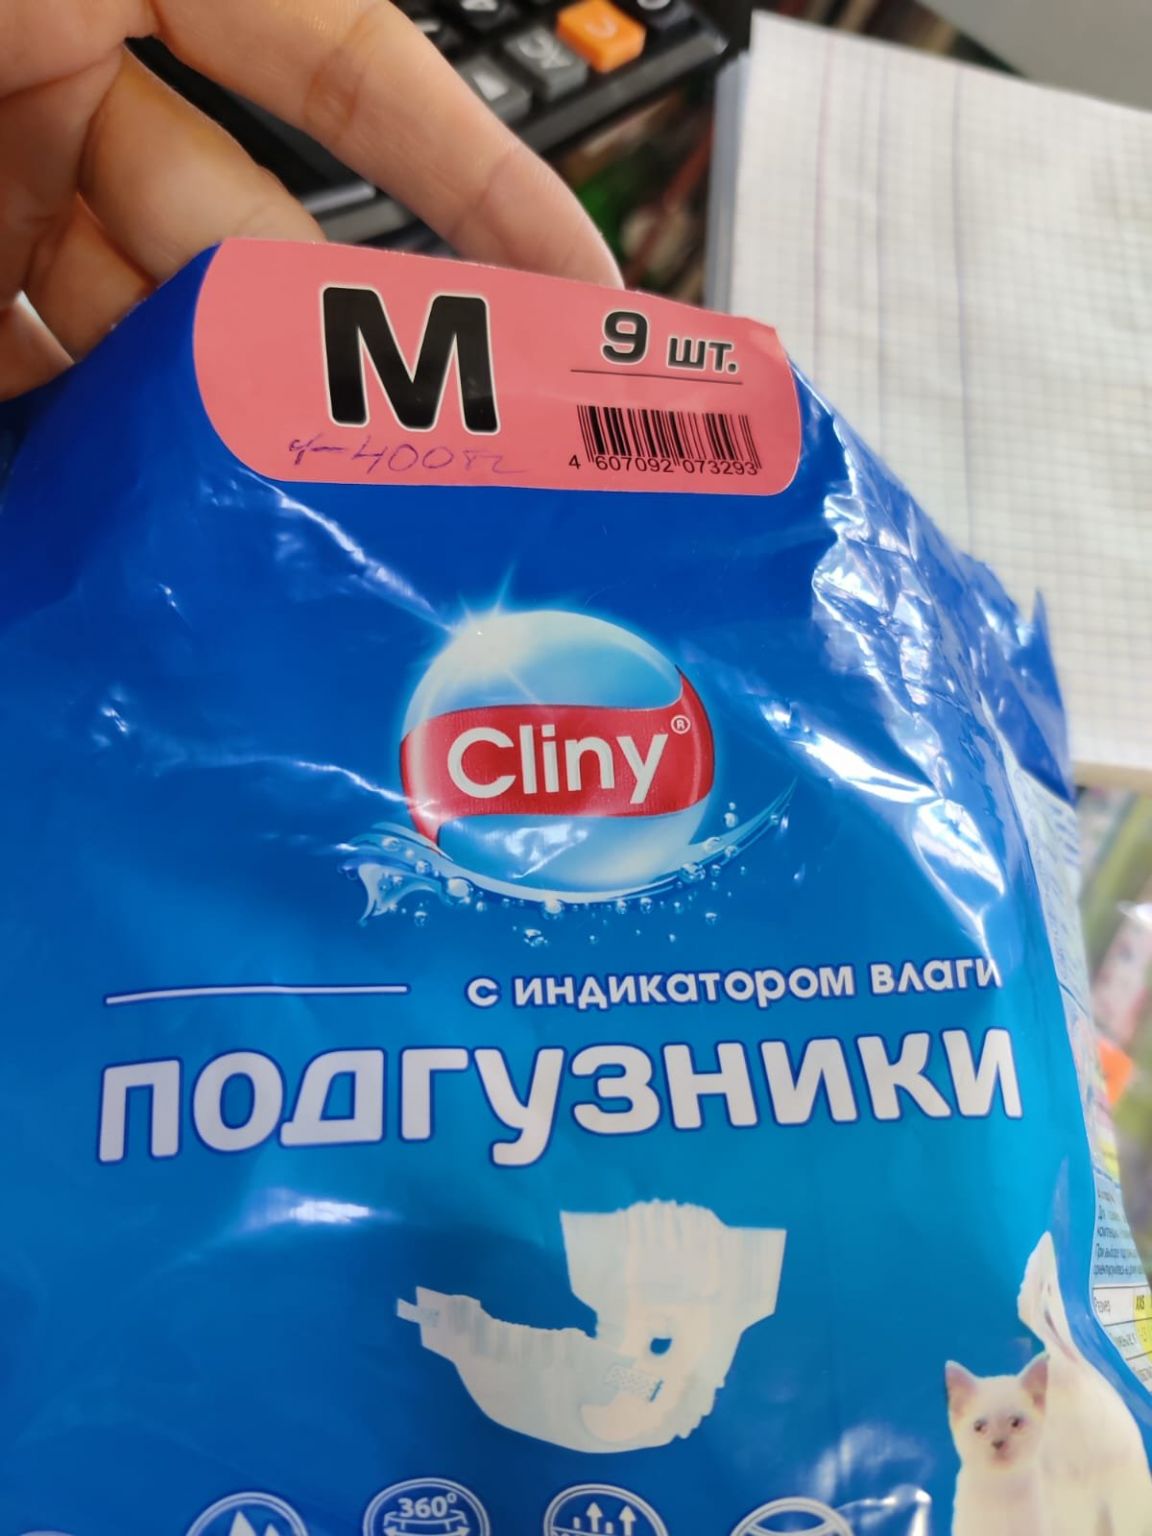 Cliny M